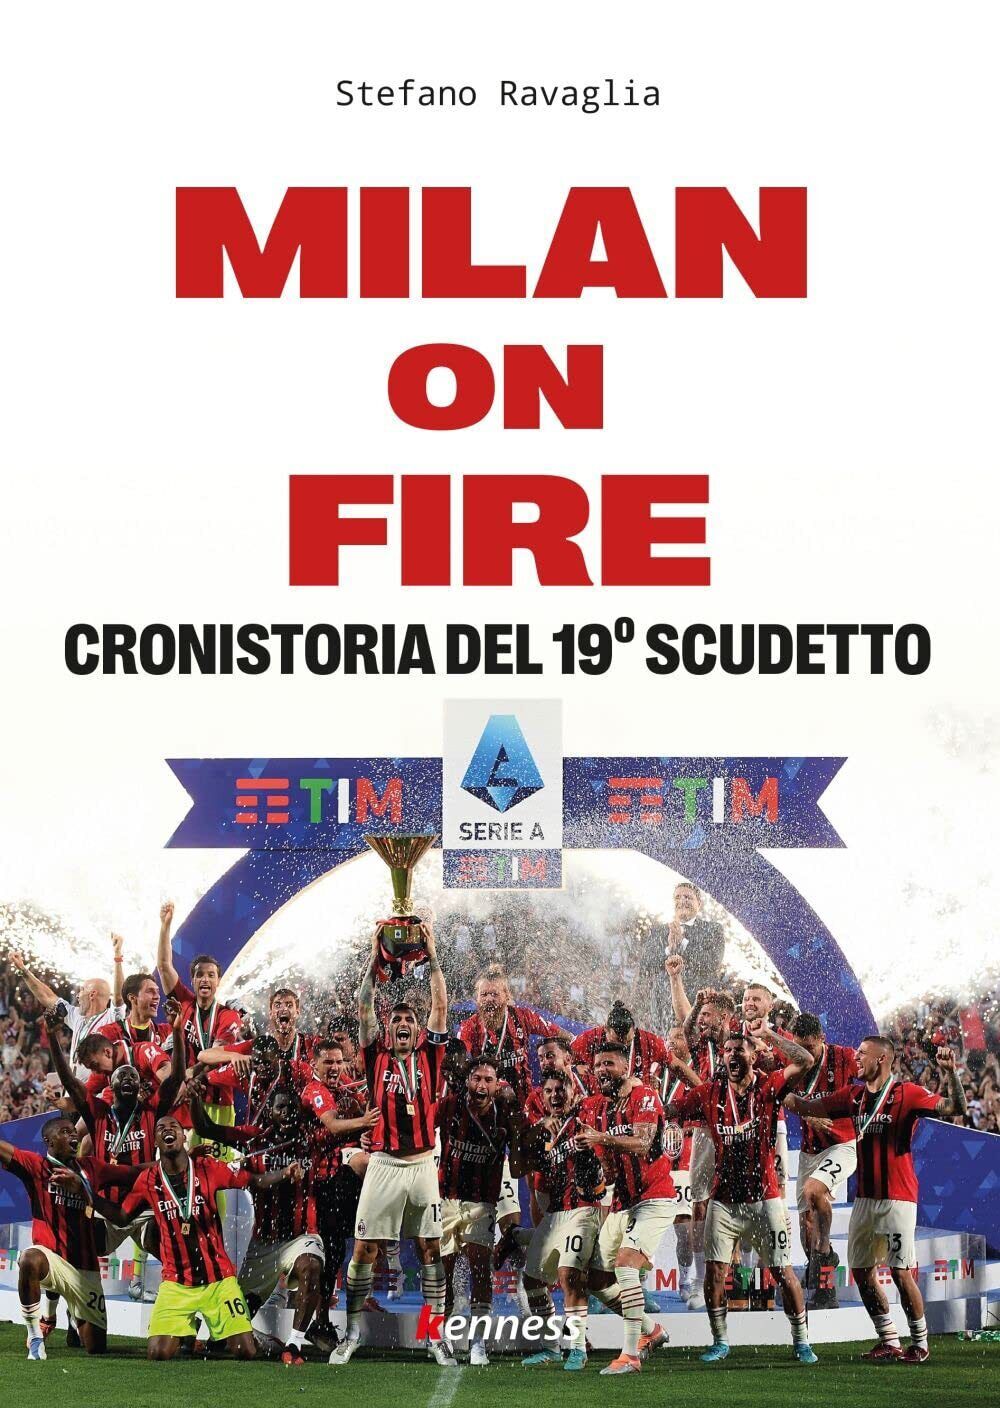 Milan on fire. Cronistoria del 19? scudetto - Stefano Ravaglia - Kenness, 2022 